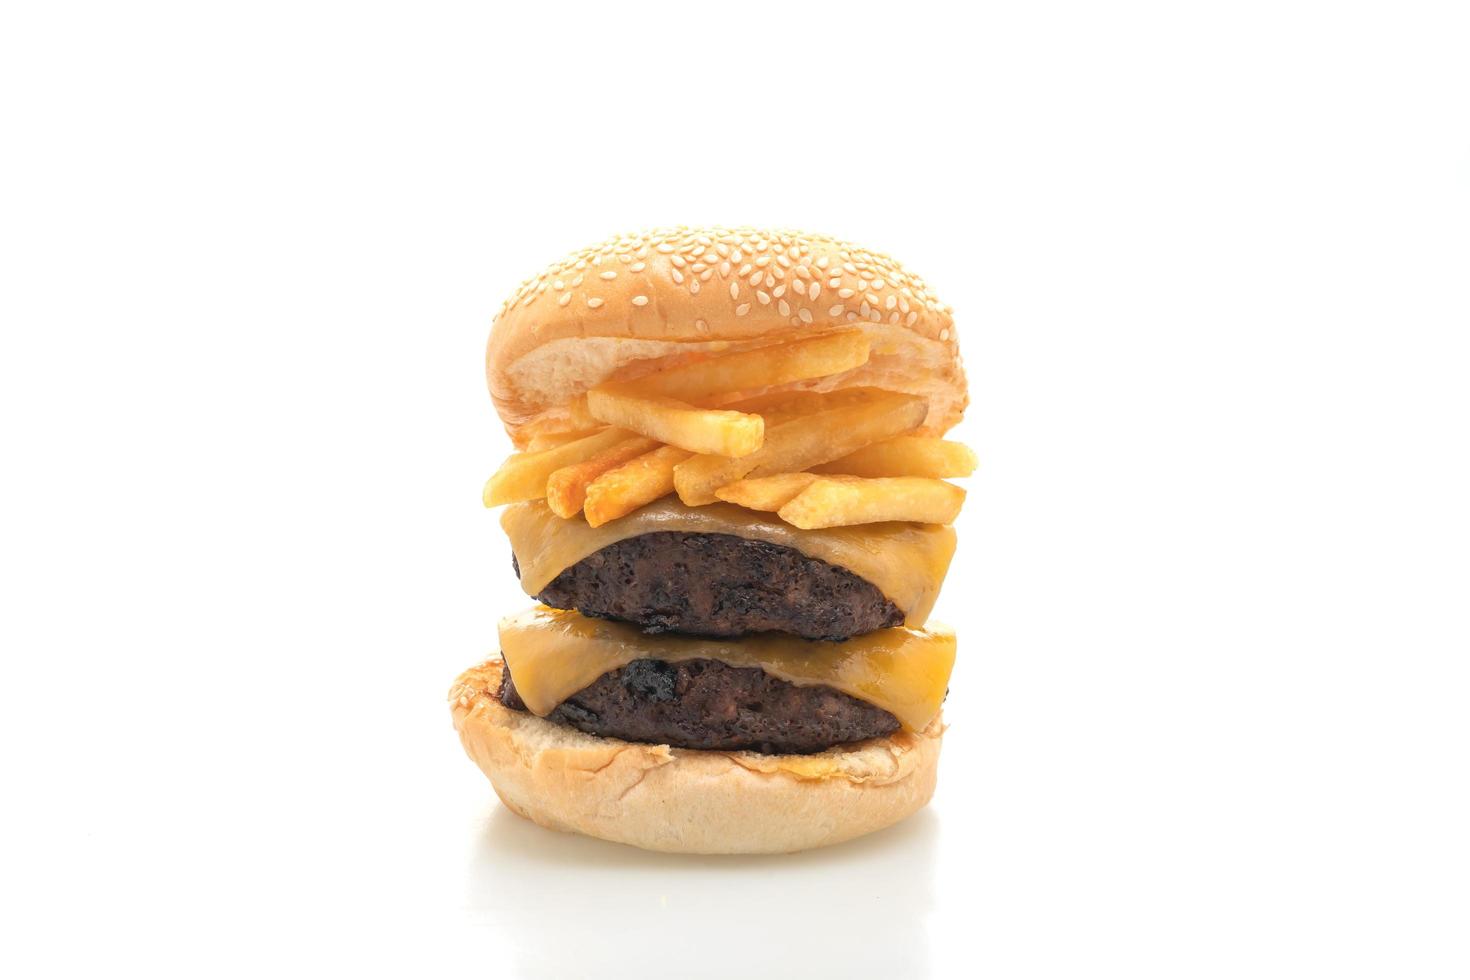 hamburgers ou hamburgers de boeuf avec du fromage et des frites - style de nourriture malsaine photo